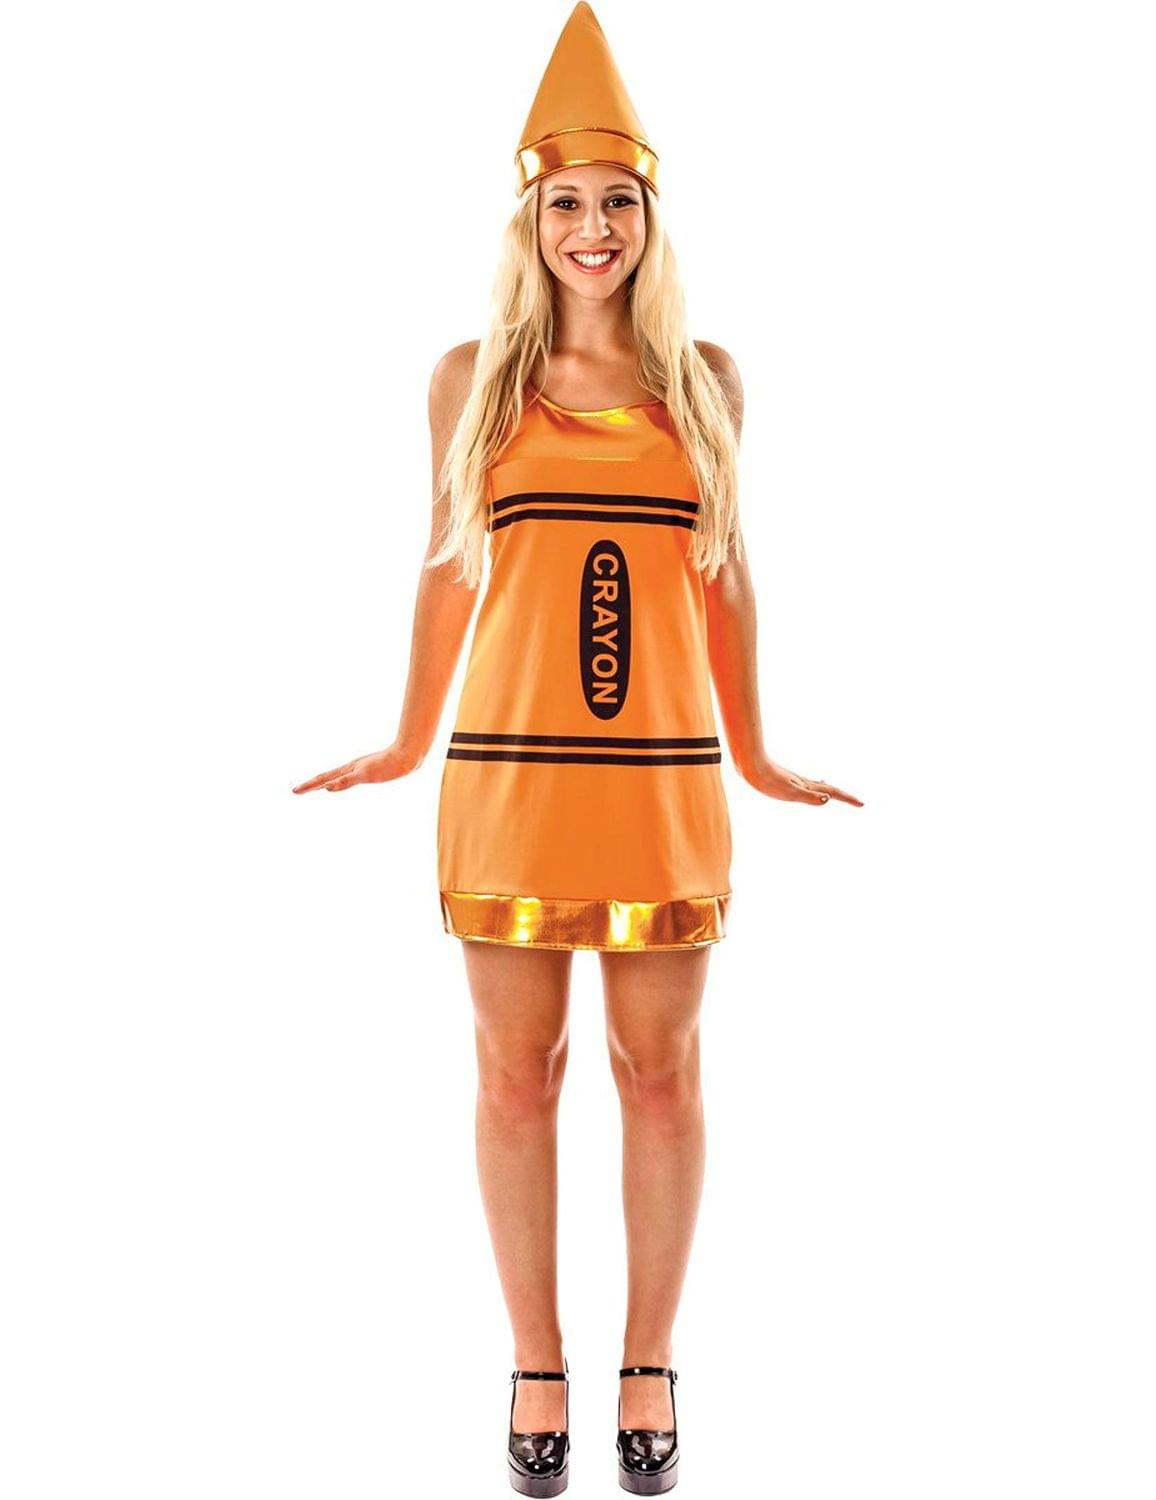 Women's Orange Crayon Fancy Dress Costume